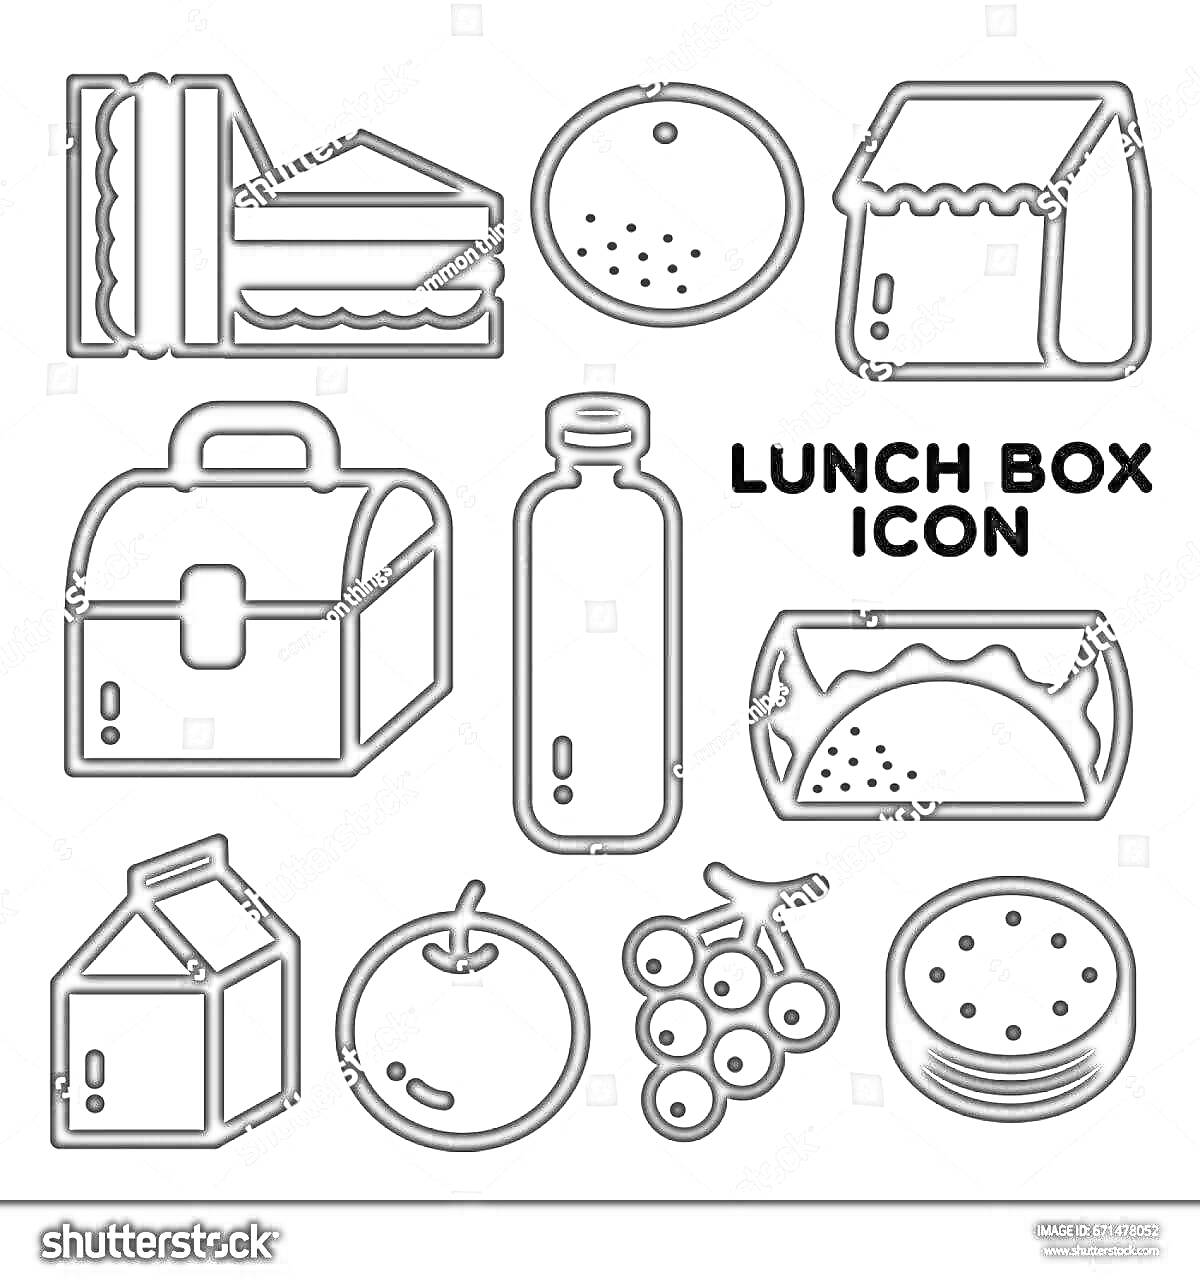 Раскраска ланч бокс, бутерброды, печенье, бумажный пакет, коробка для еды, бутылка, тако, молочный пакет, яблоко, гроздь винограда